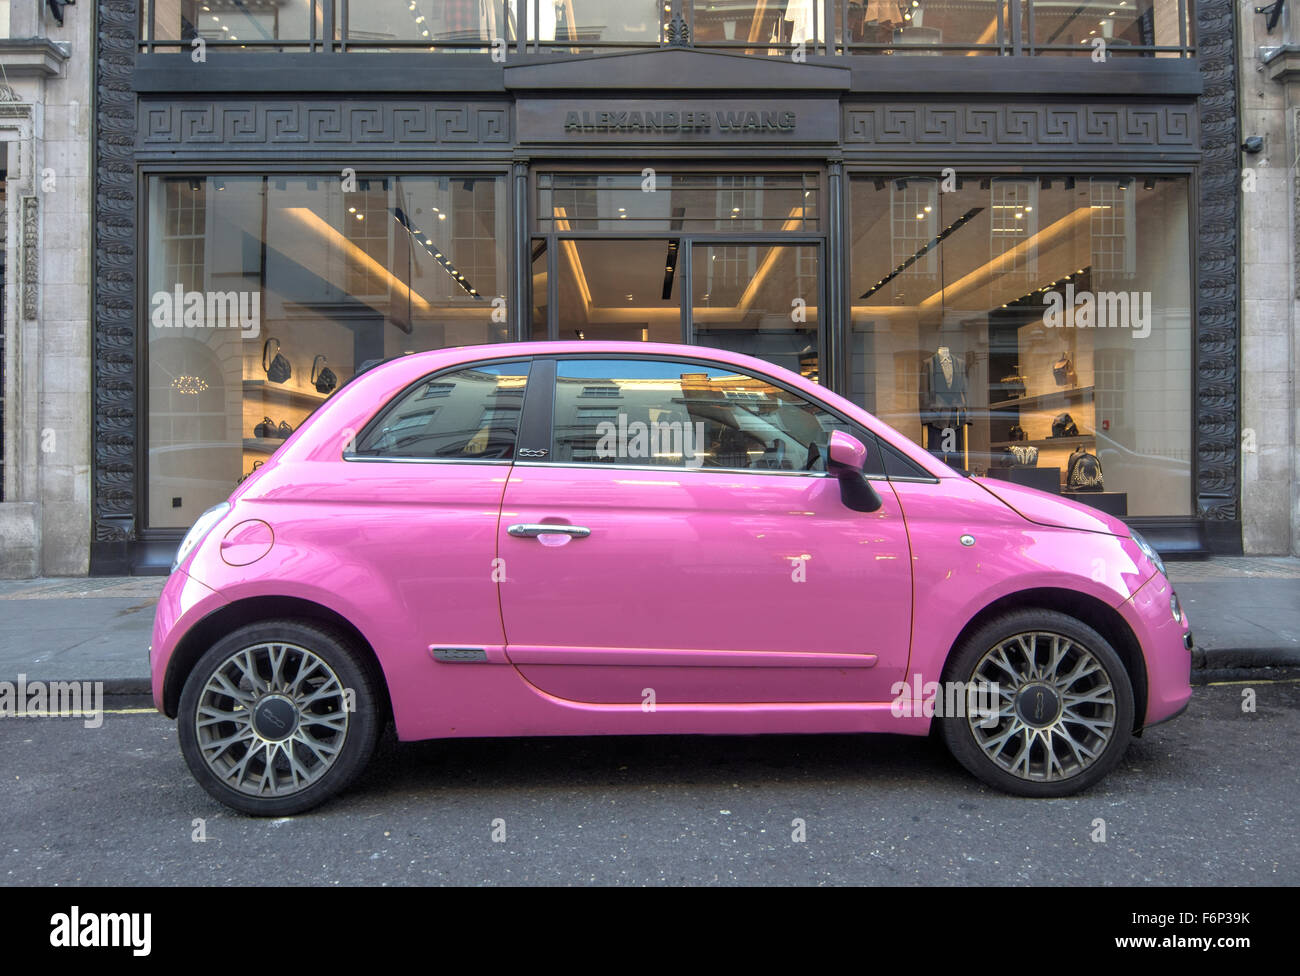 Fiat 500 voiture rose. Fiat 500 Rose Bond street londres Banque D'Images